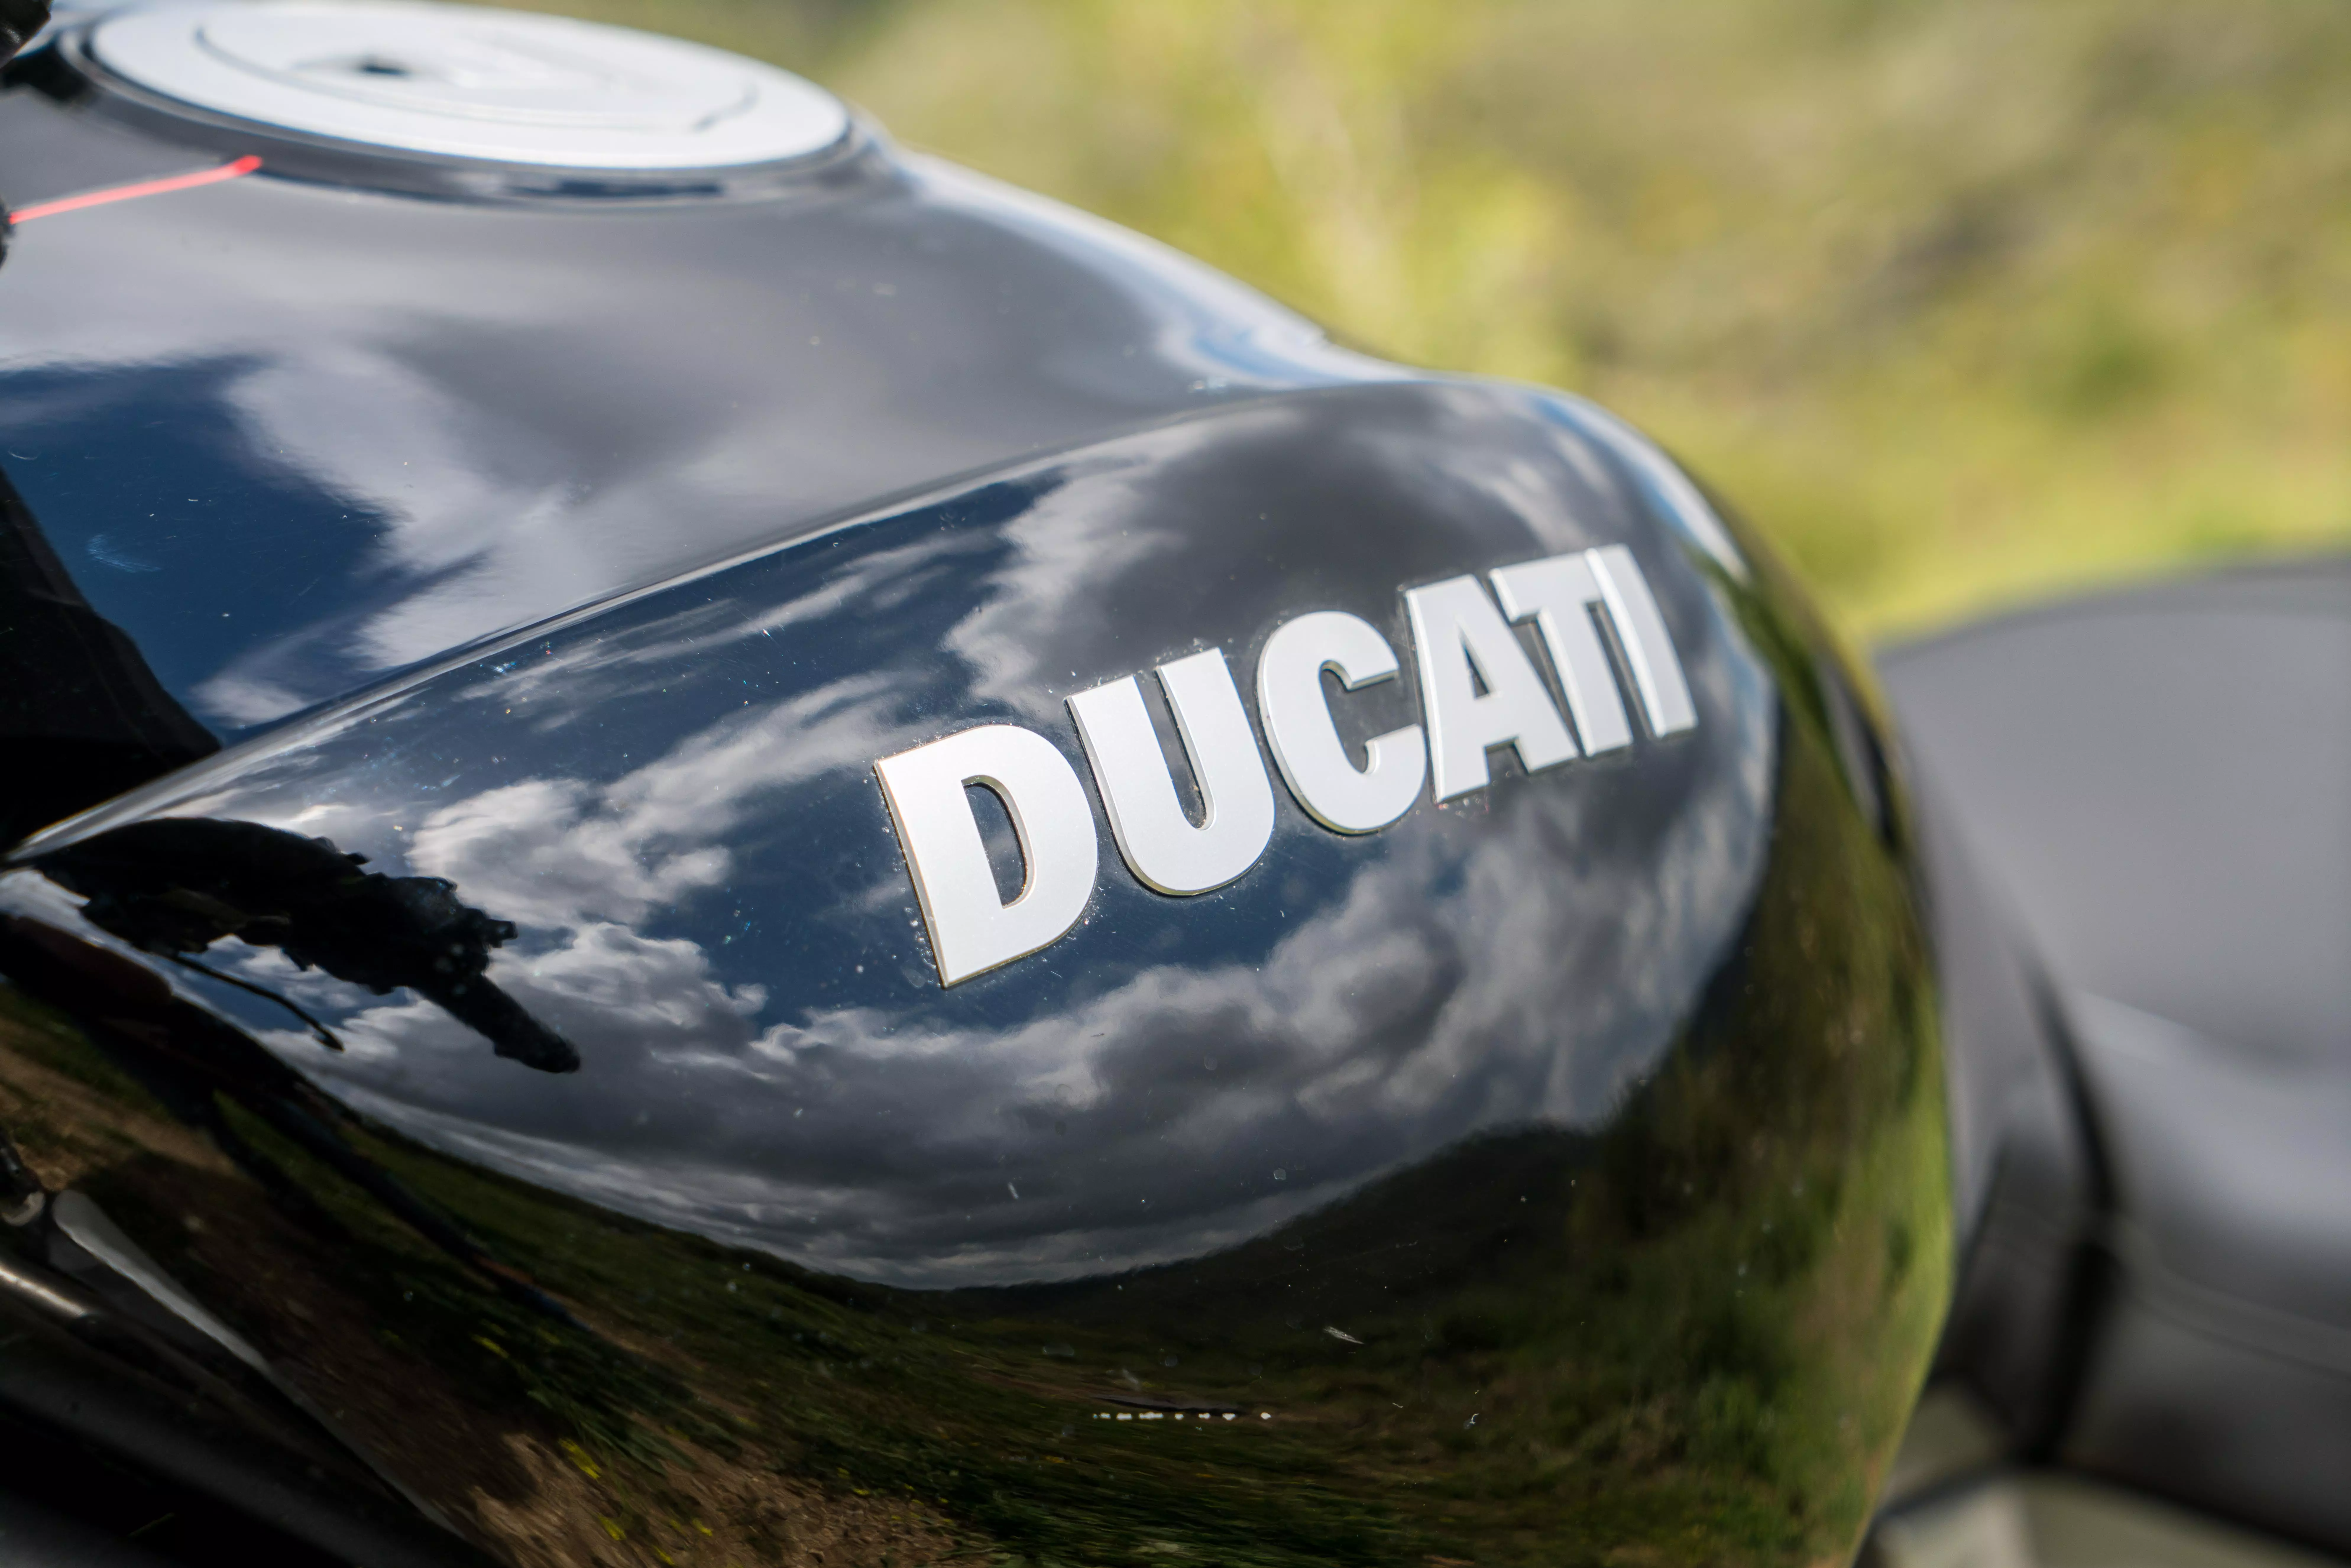 מבחן אופנוע דוקאטי X דיאבל S 1300. מרץ 2016